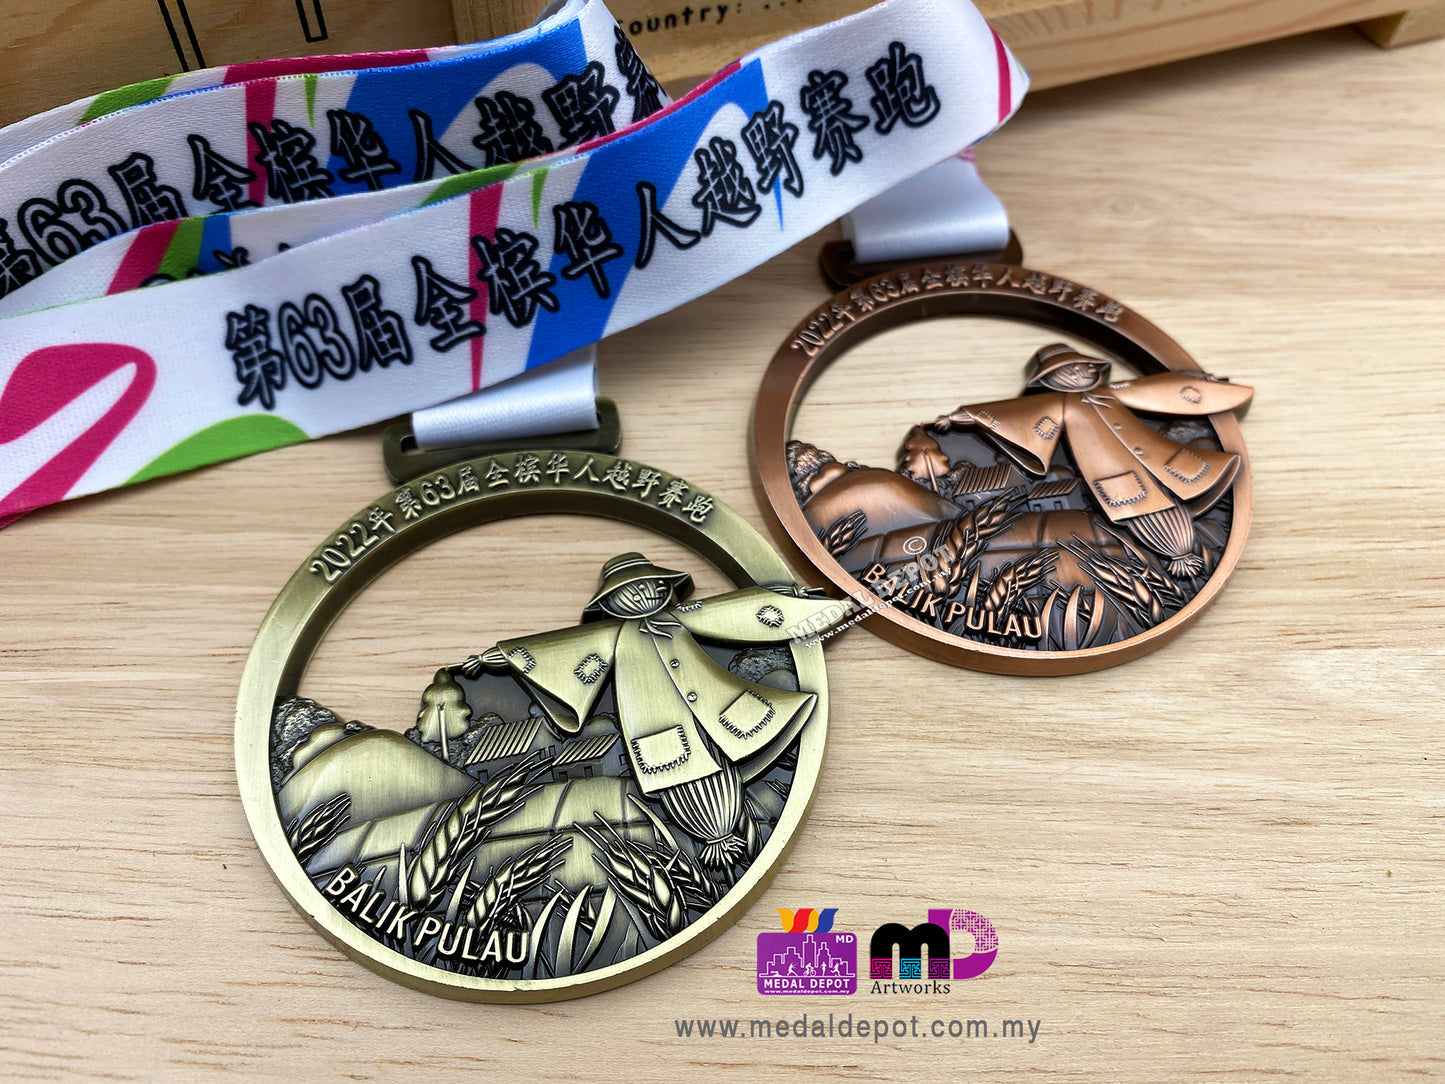 Chung Ling Cross Country Run 2022 medal